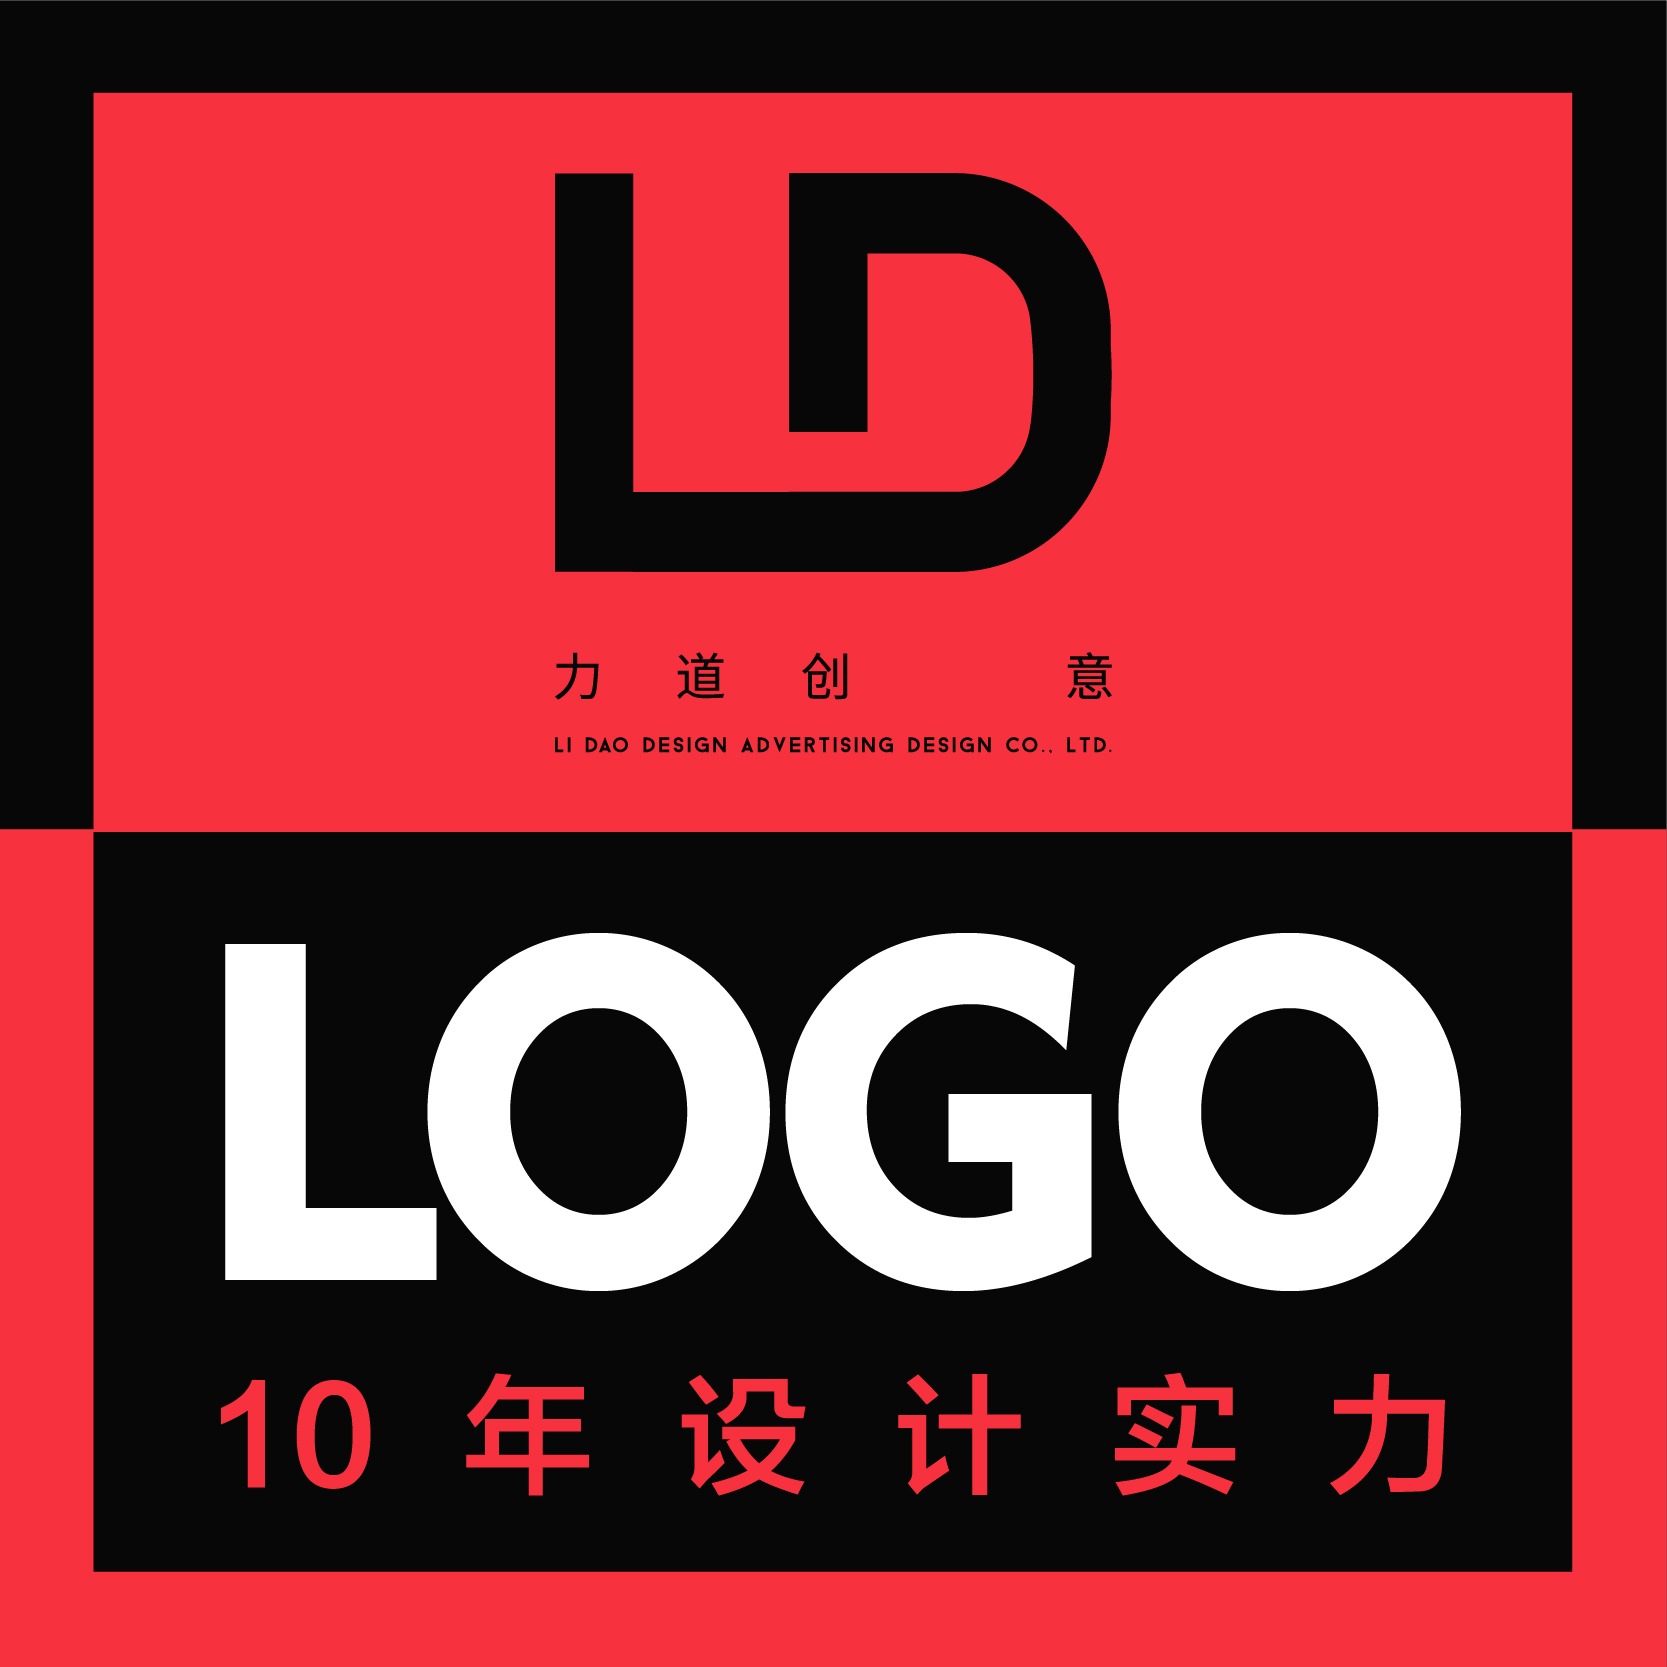 创意logo设计公司品牌LOGO设计企业标志设计吉祥物设计